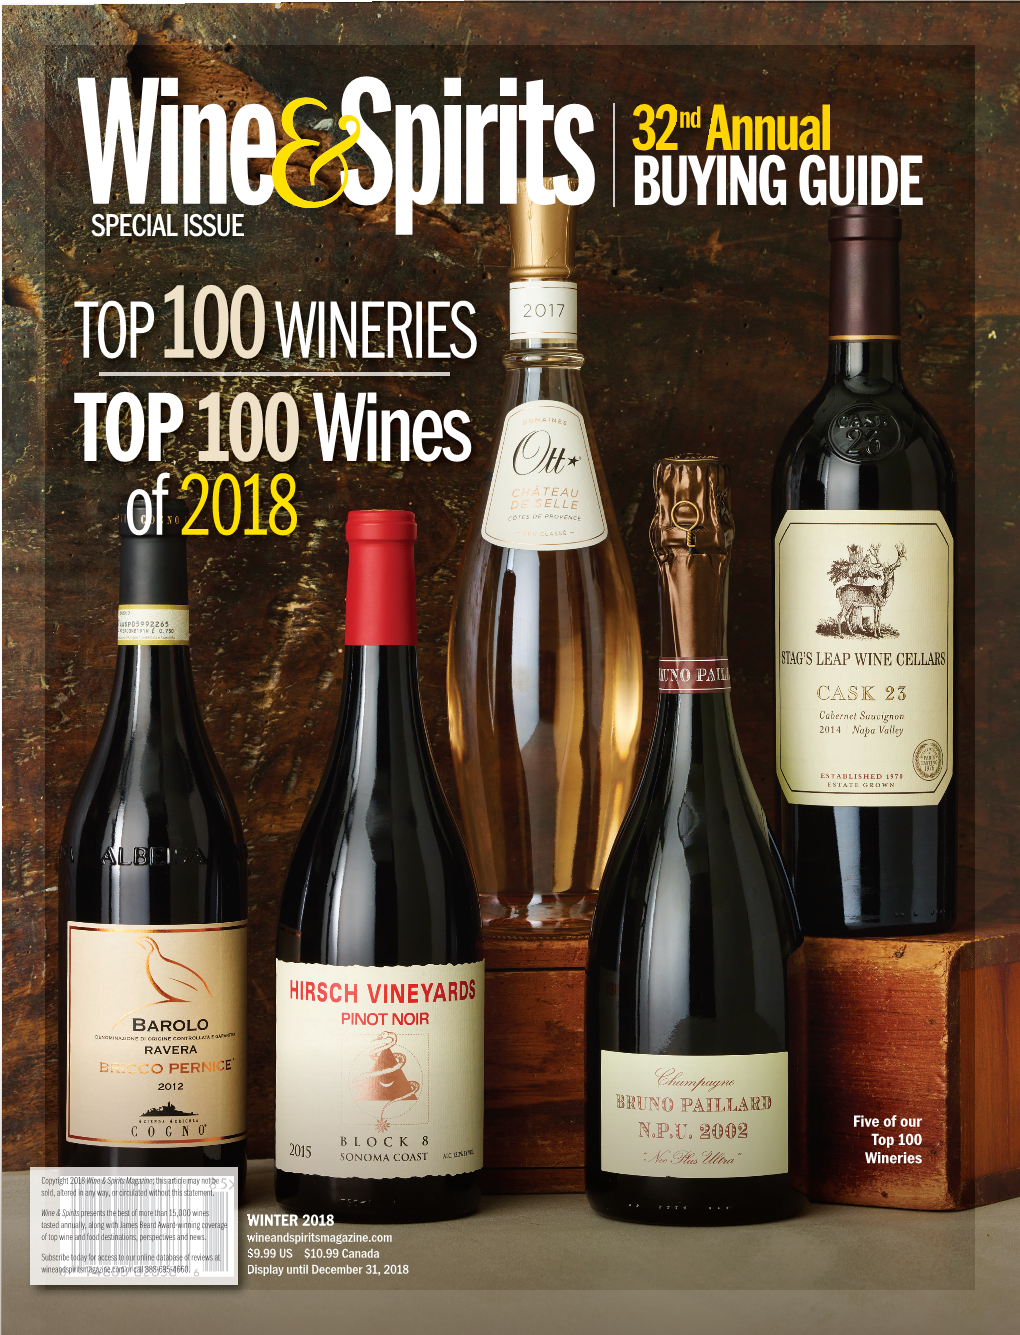 Top 100 Wineries of 2018